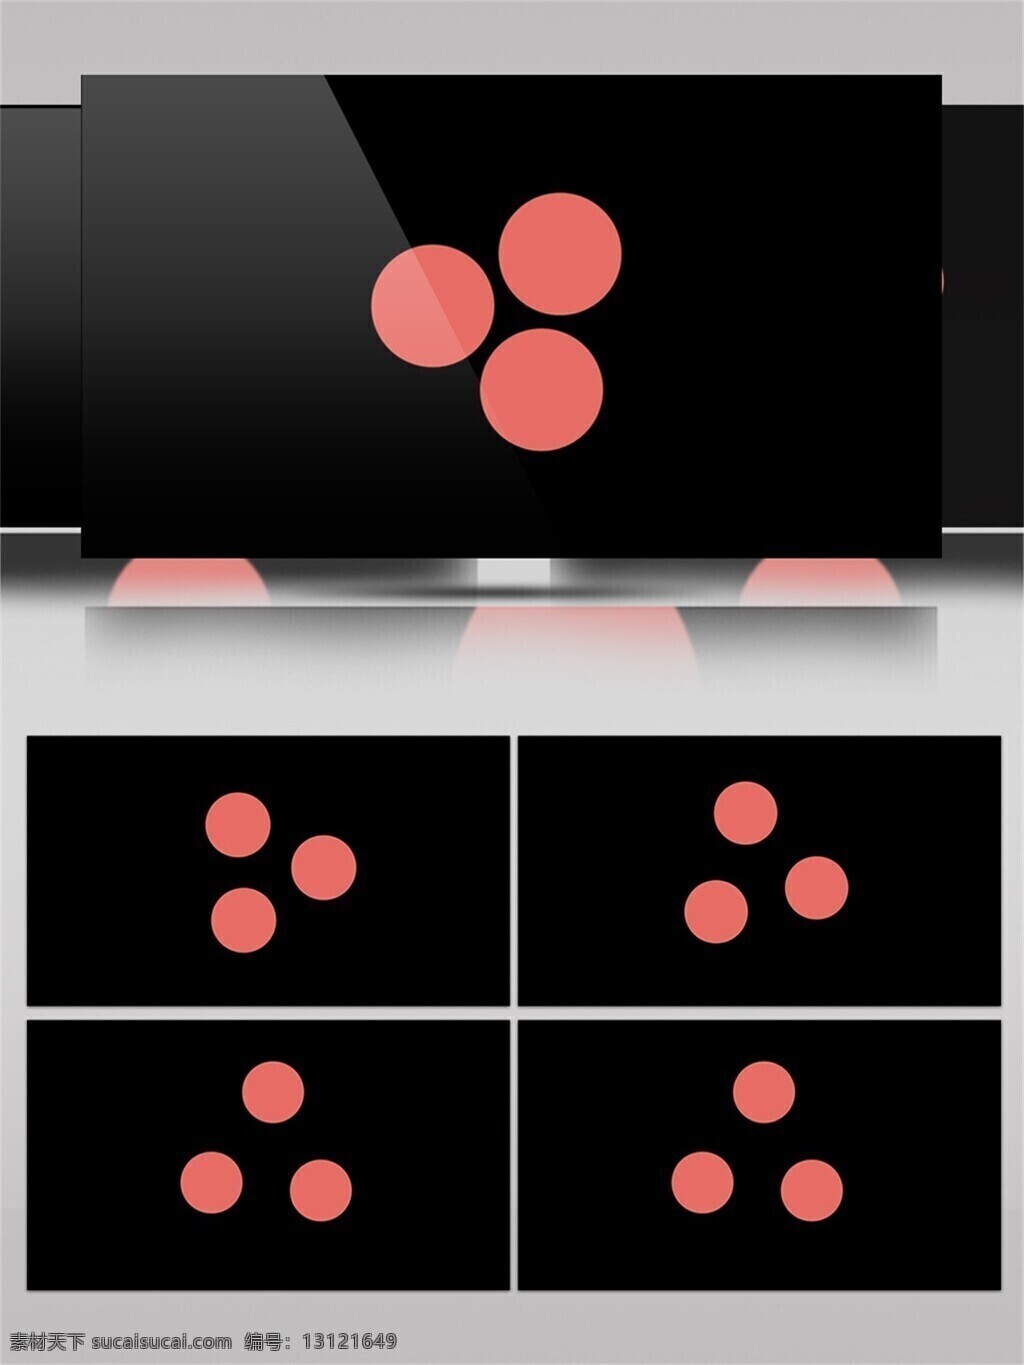 圆点 图形 图案 组合 动画 视频 平面 扁平化 二维 设计元素 动感 动态变化 分开组合